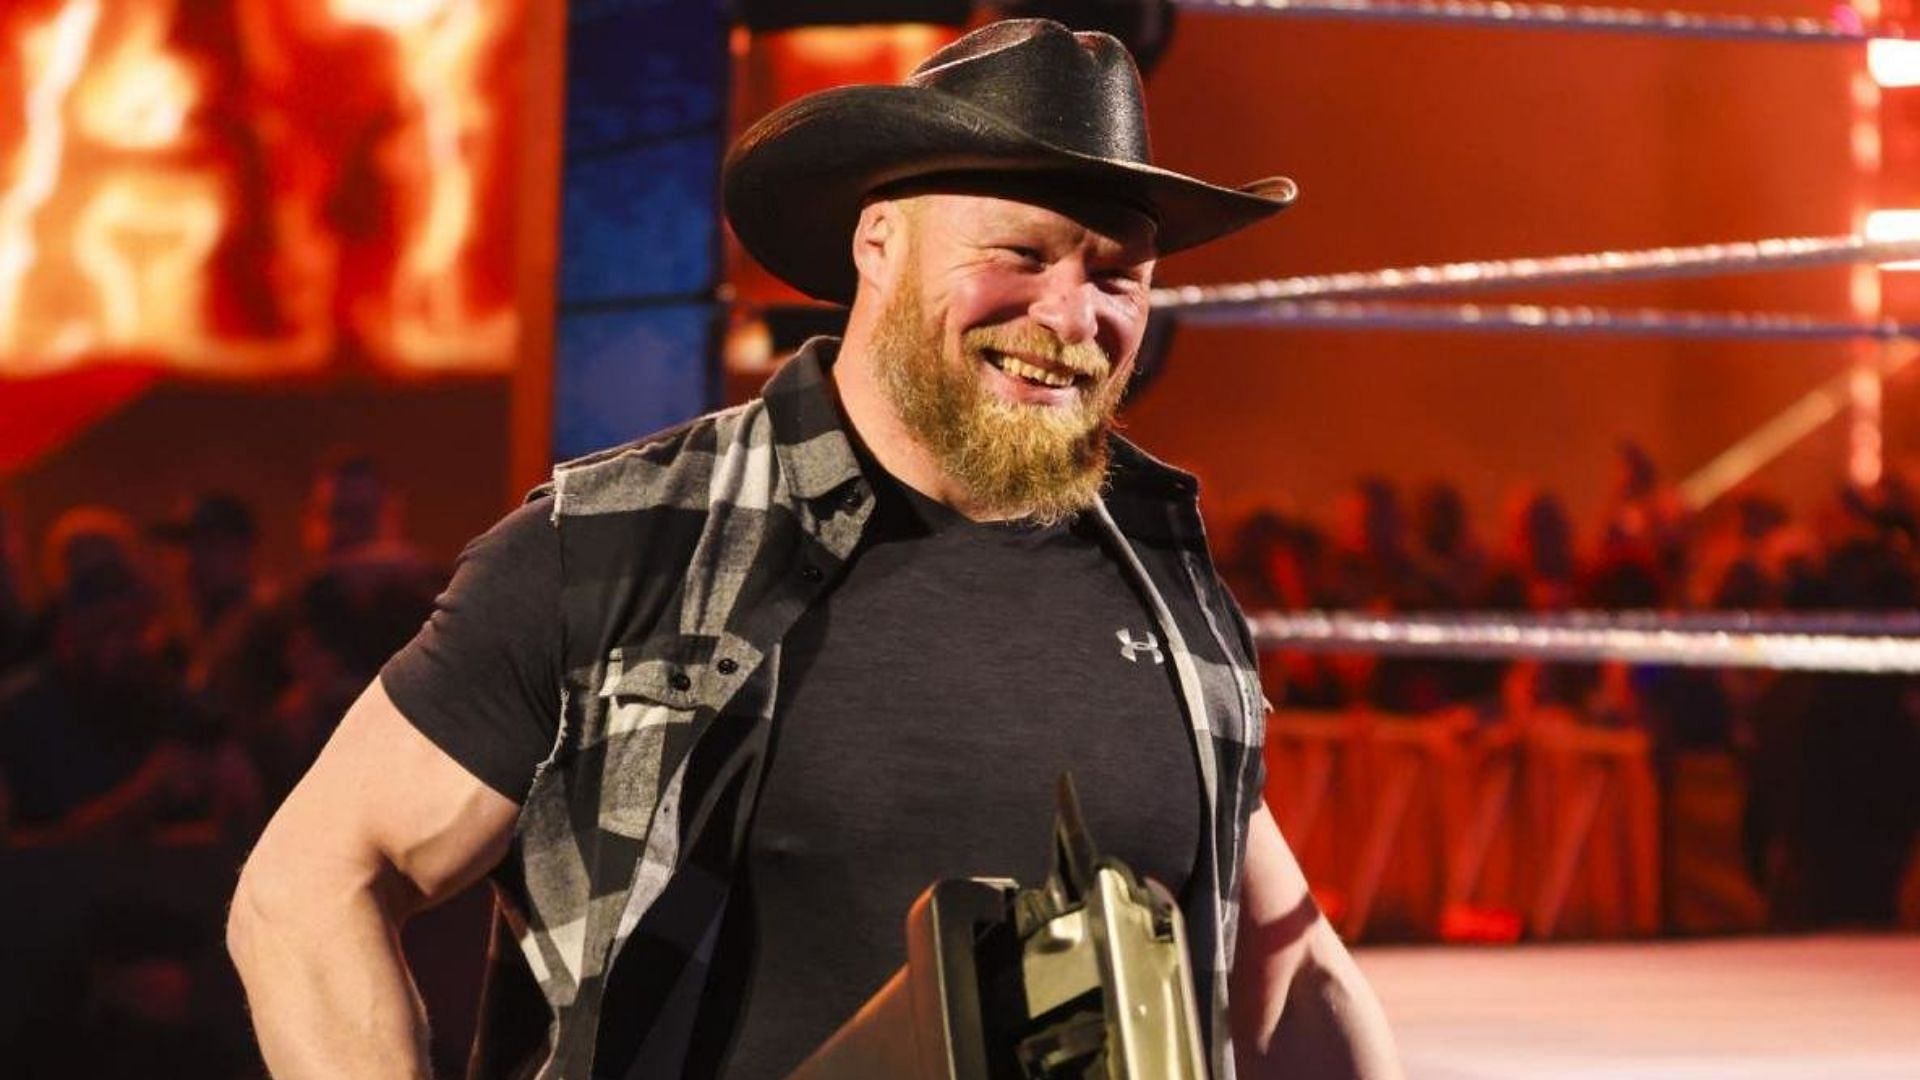 Brock Lesnar will battle Roman Reigns at SummerSlam